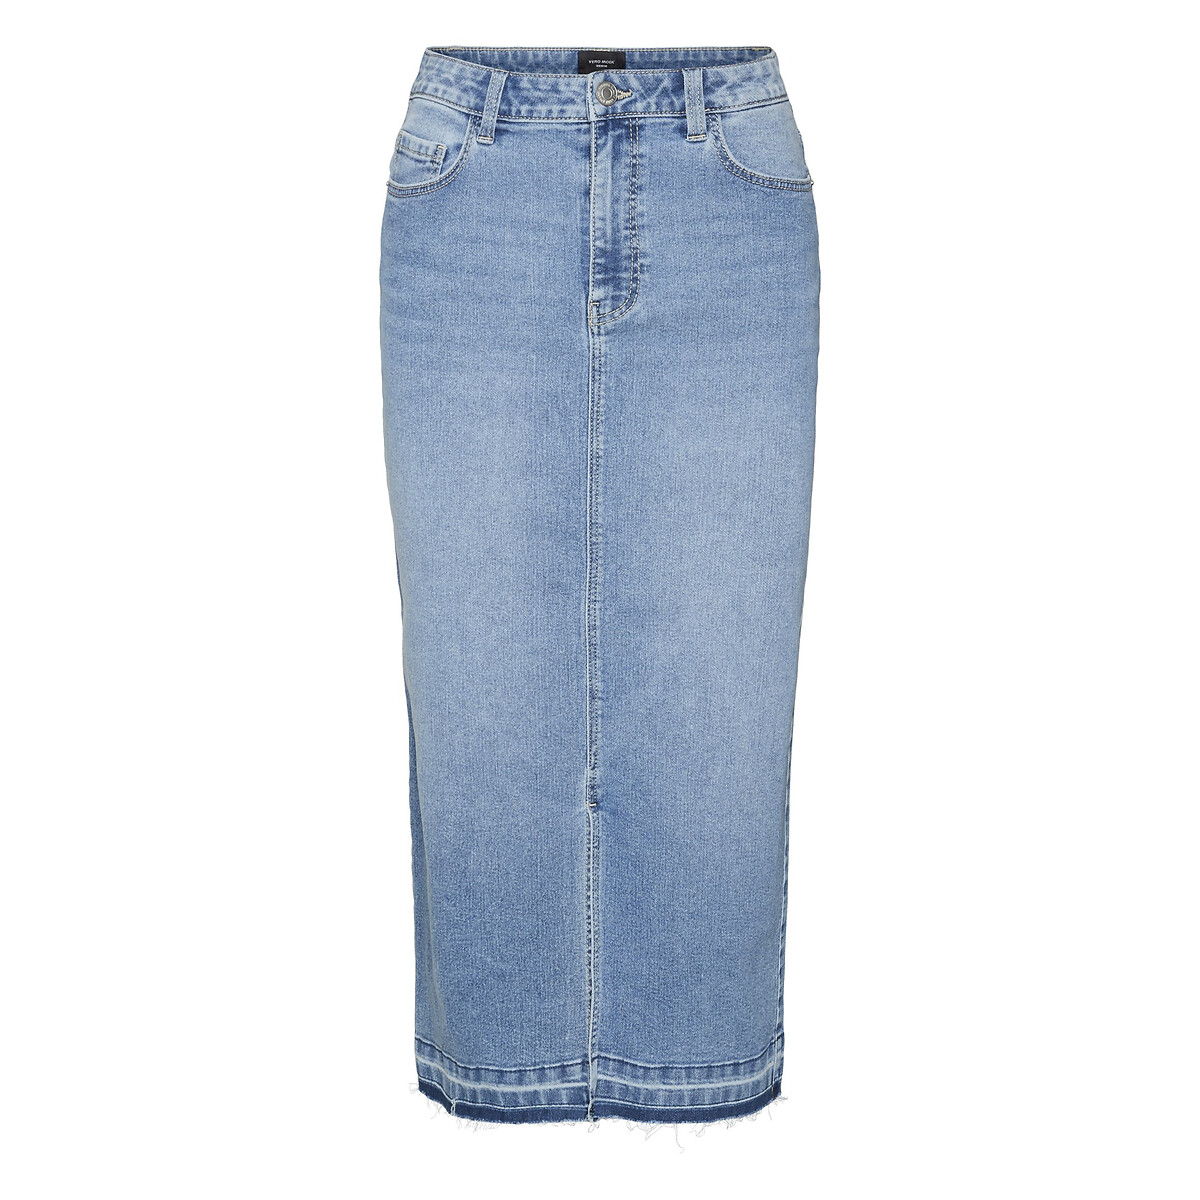 Юбка из джинсовой ткани с высокой посадкой  XL синий LaRedoute, размер XL - фото 1